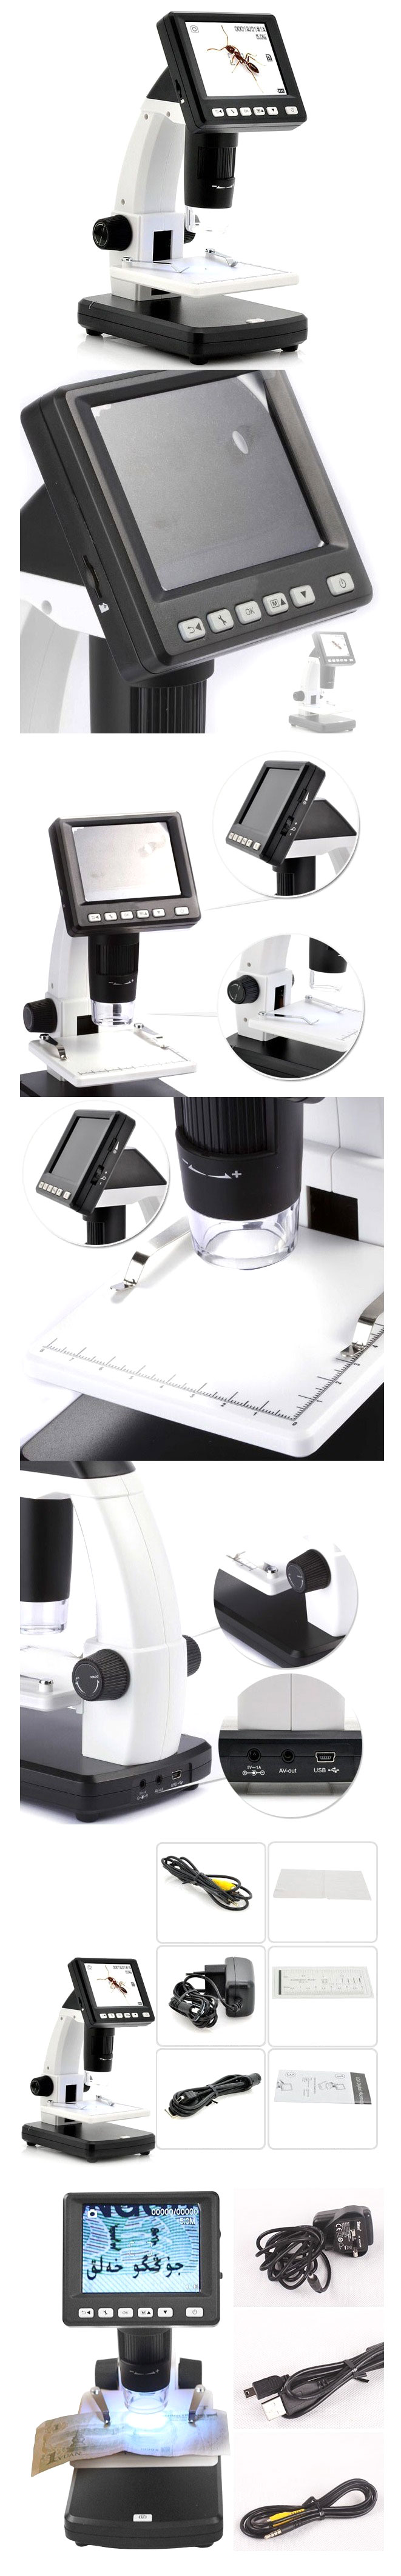 mikroskop cyfrowy sub led lcd avi jpg video microsd powiększenie 500x bte-526